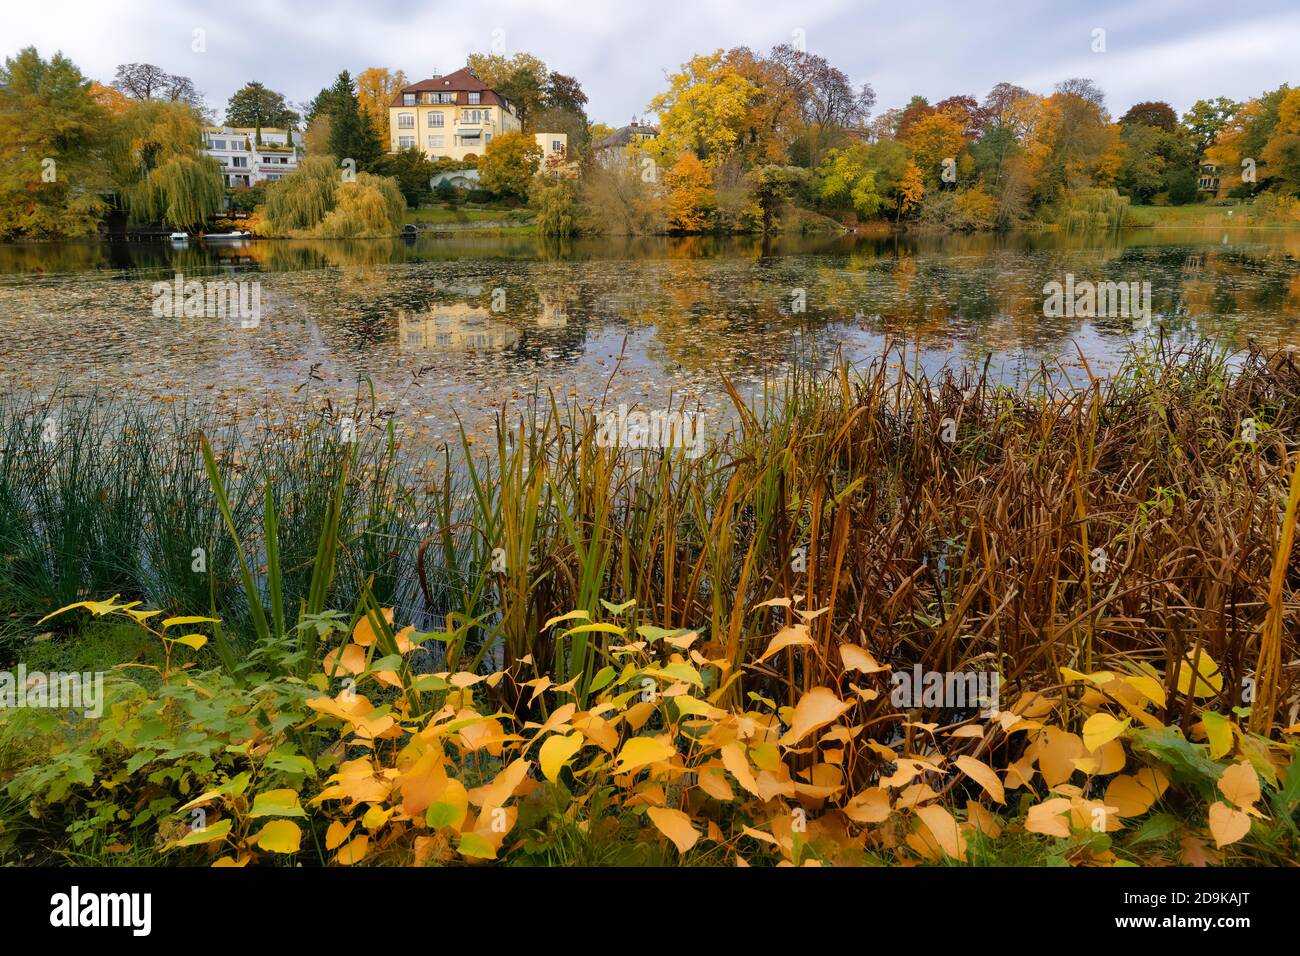 Koenigssee im Herbst, Bezirk Charlottenburg-Wilmersdorf in der Villenkolonie Grunewald, Berlin, Deutschland Stock Photo